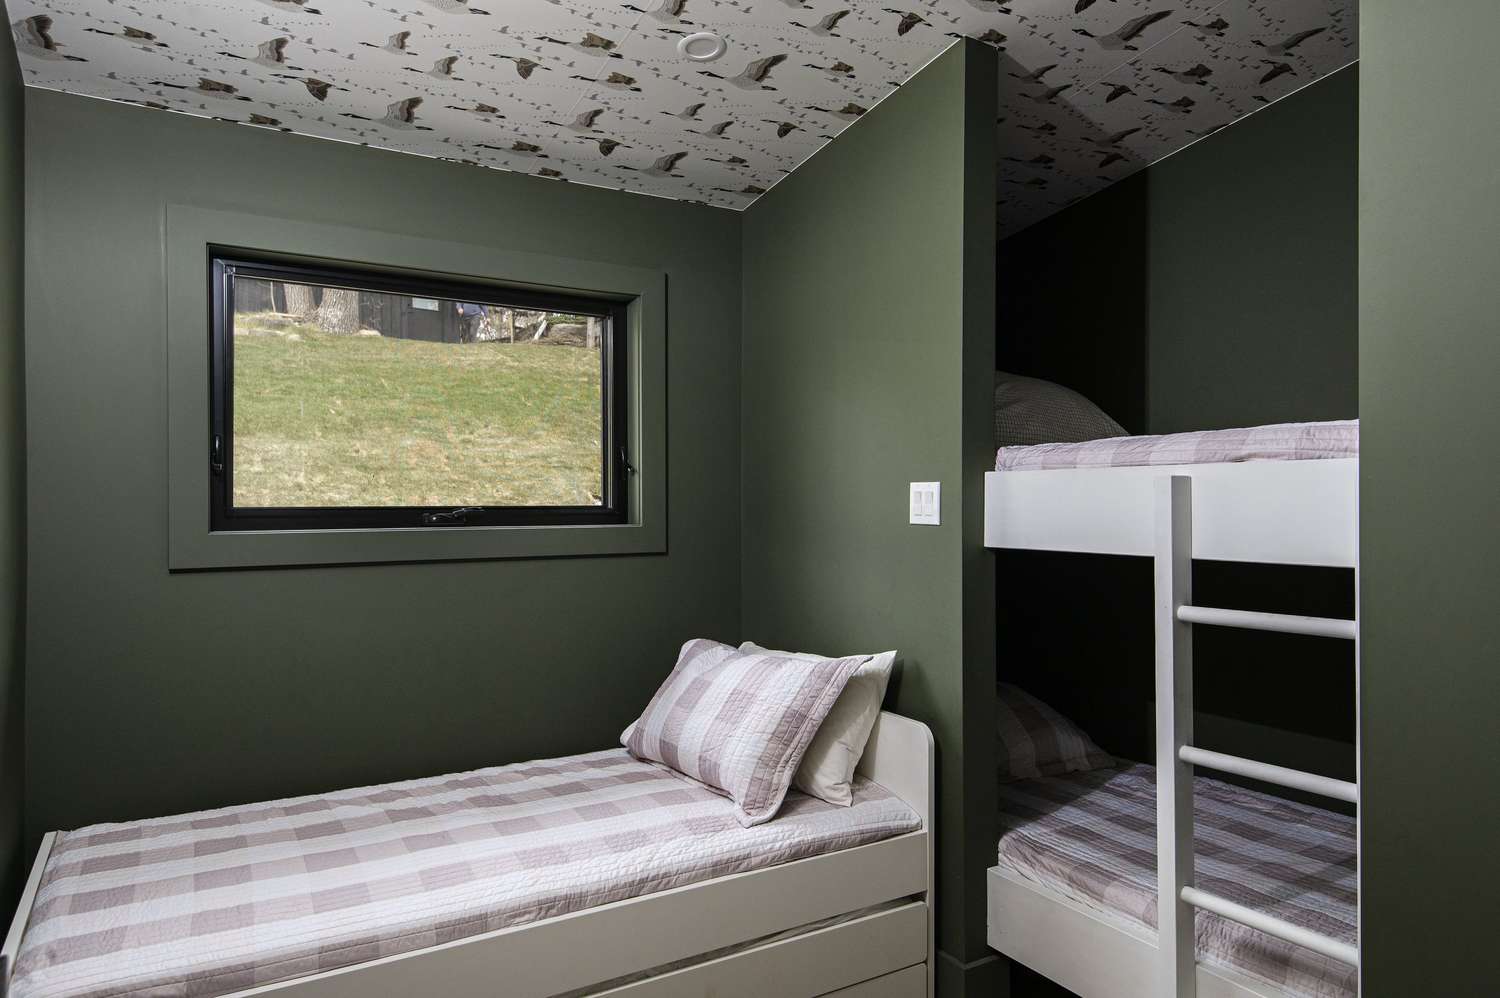 Paredes verdes e teto com papel de parede em um quarto com beliches